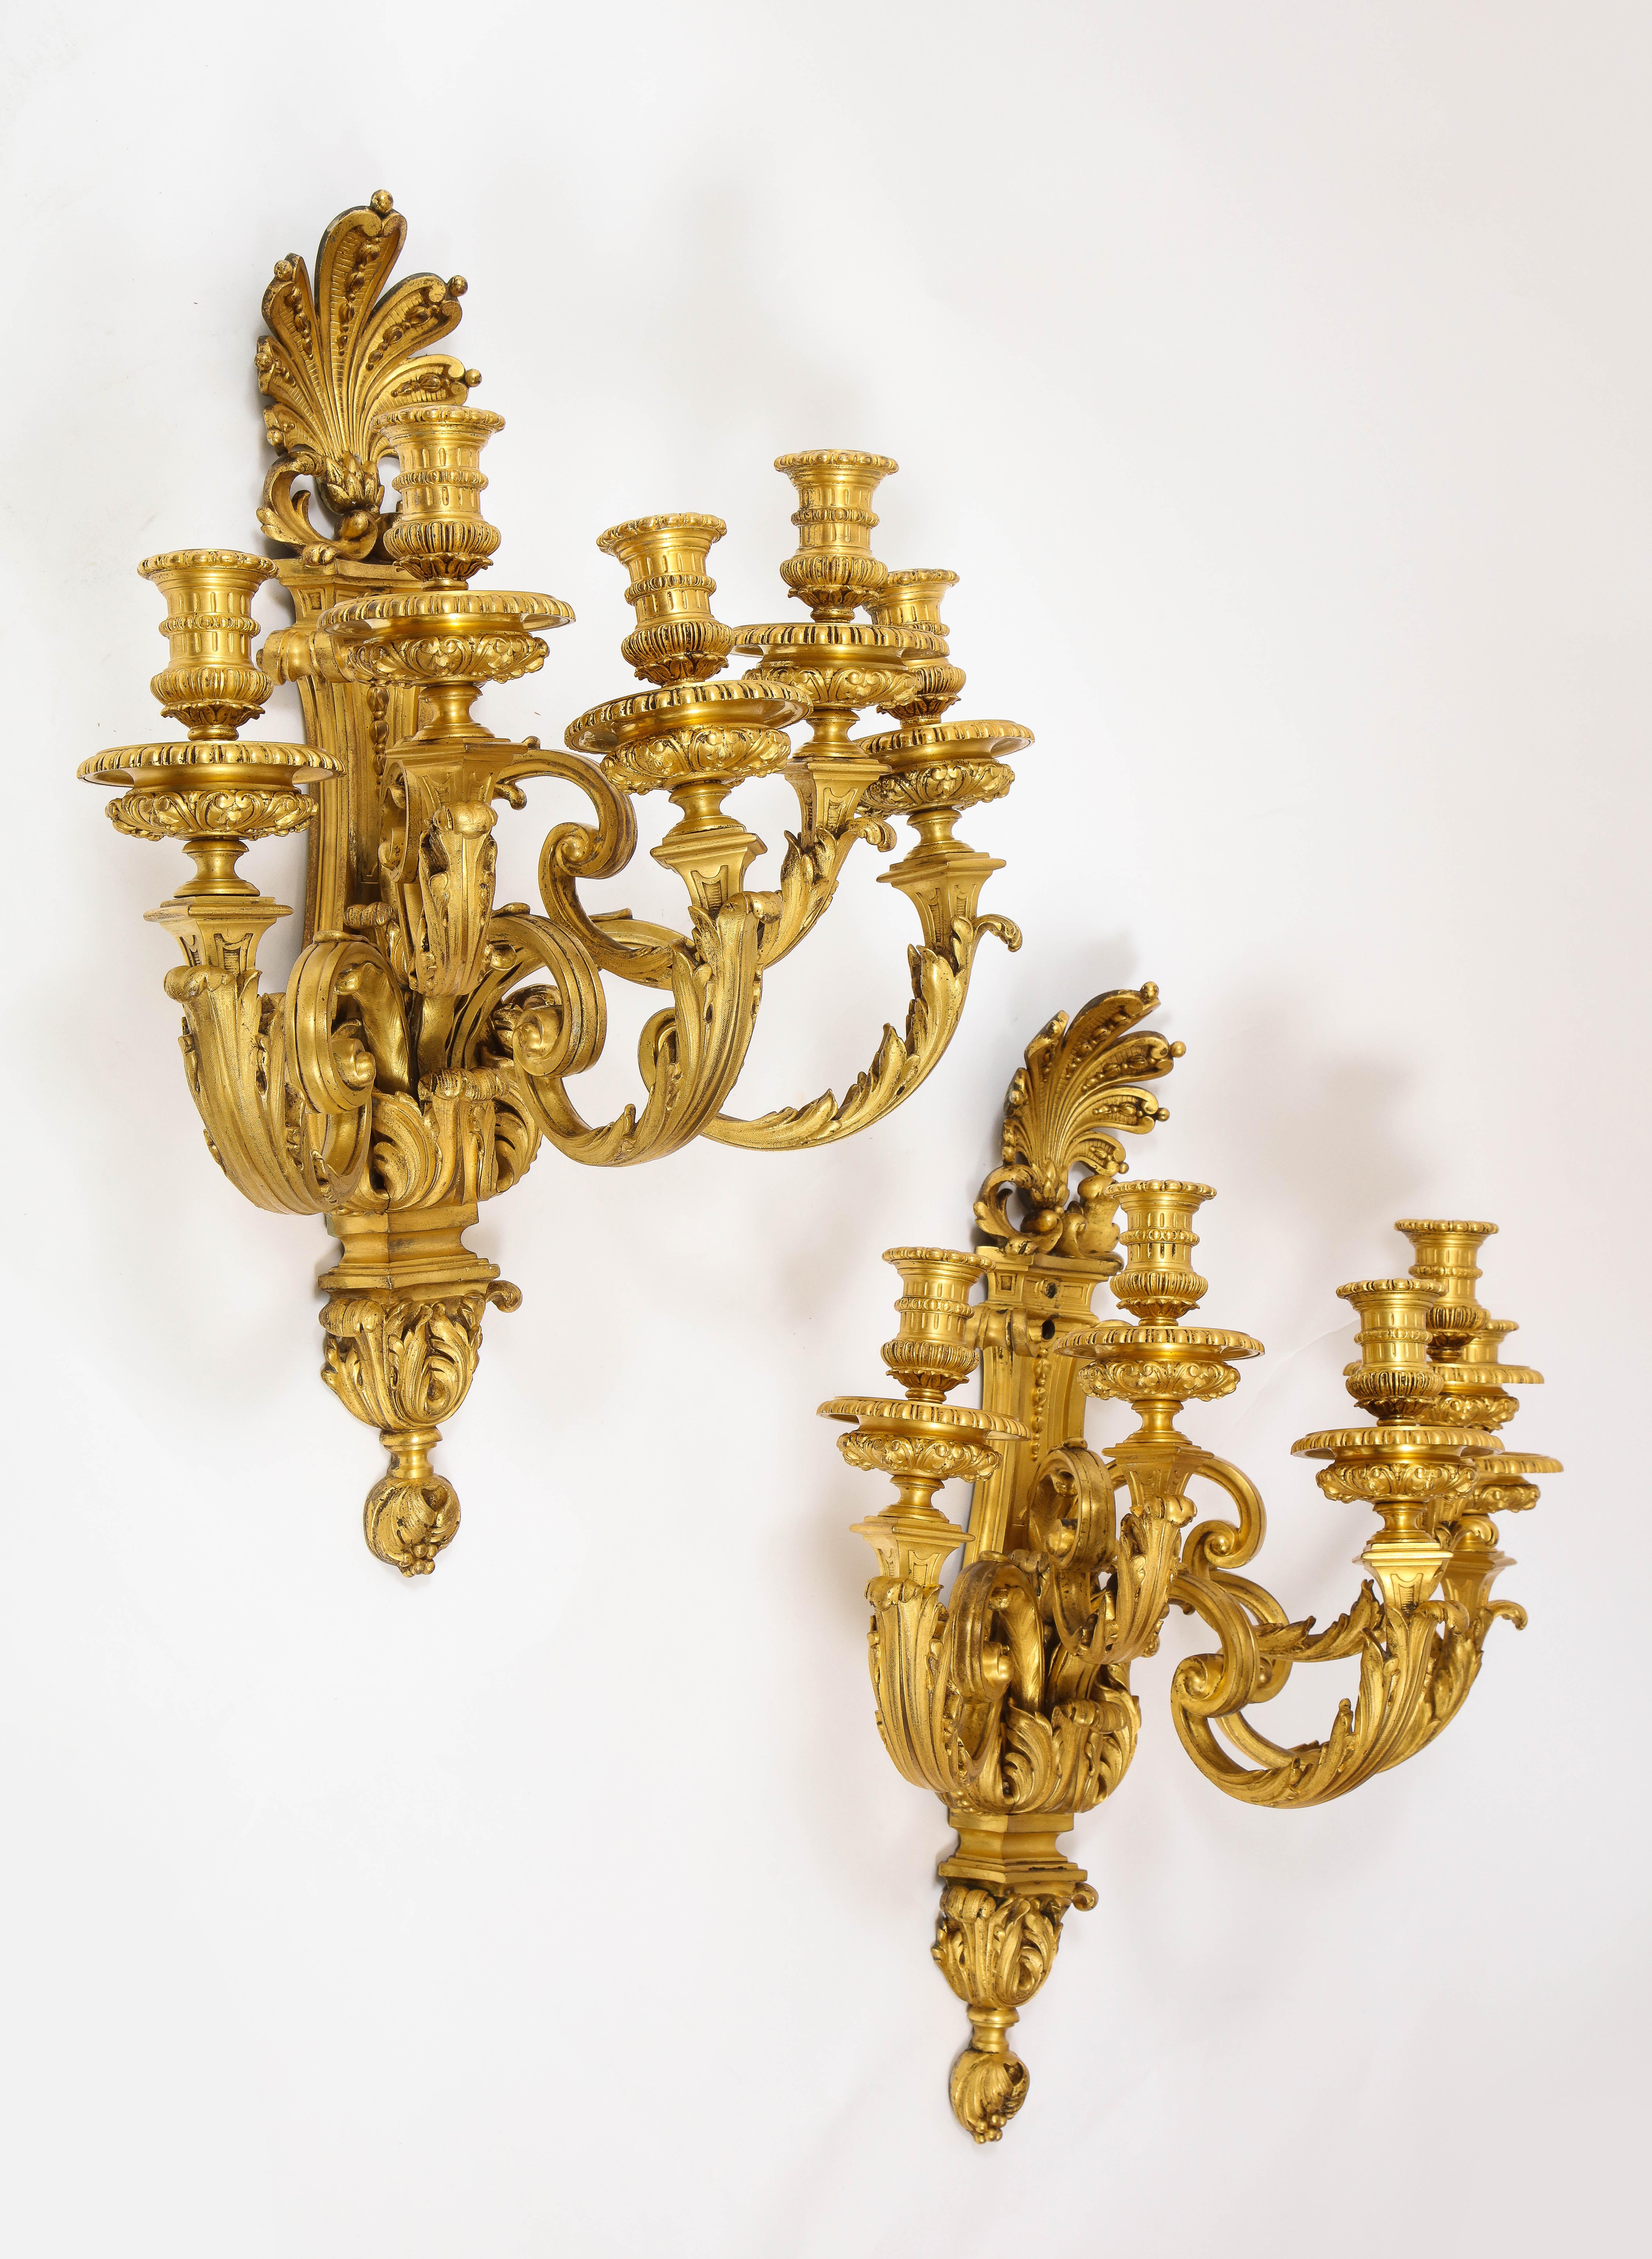 Ein unglaubliches und monumentales Paar französischer fünfarmiger Bronzewandleuchter im Louis-XVI-Stil aus dem 19. Jede Leuchte hat eine monumentale Größe. Die meisten Wandleuchter dieser Epoche sind zwei- bis vierarmig, diese jedoch sind